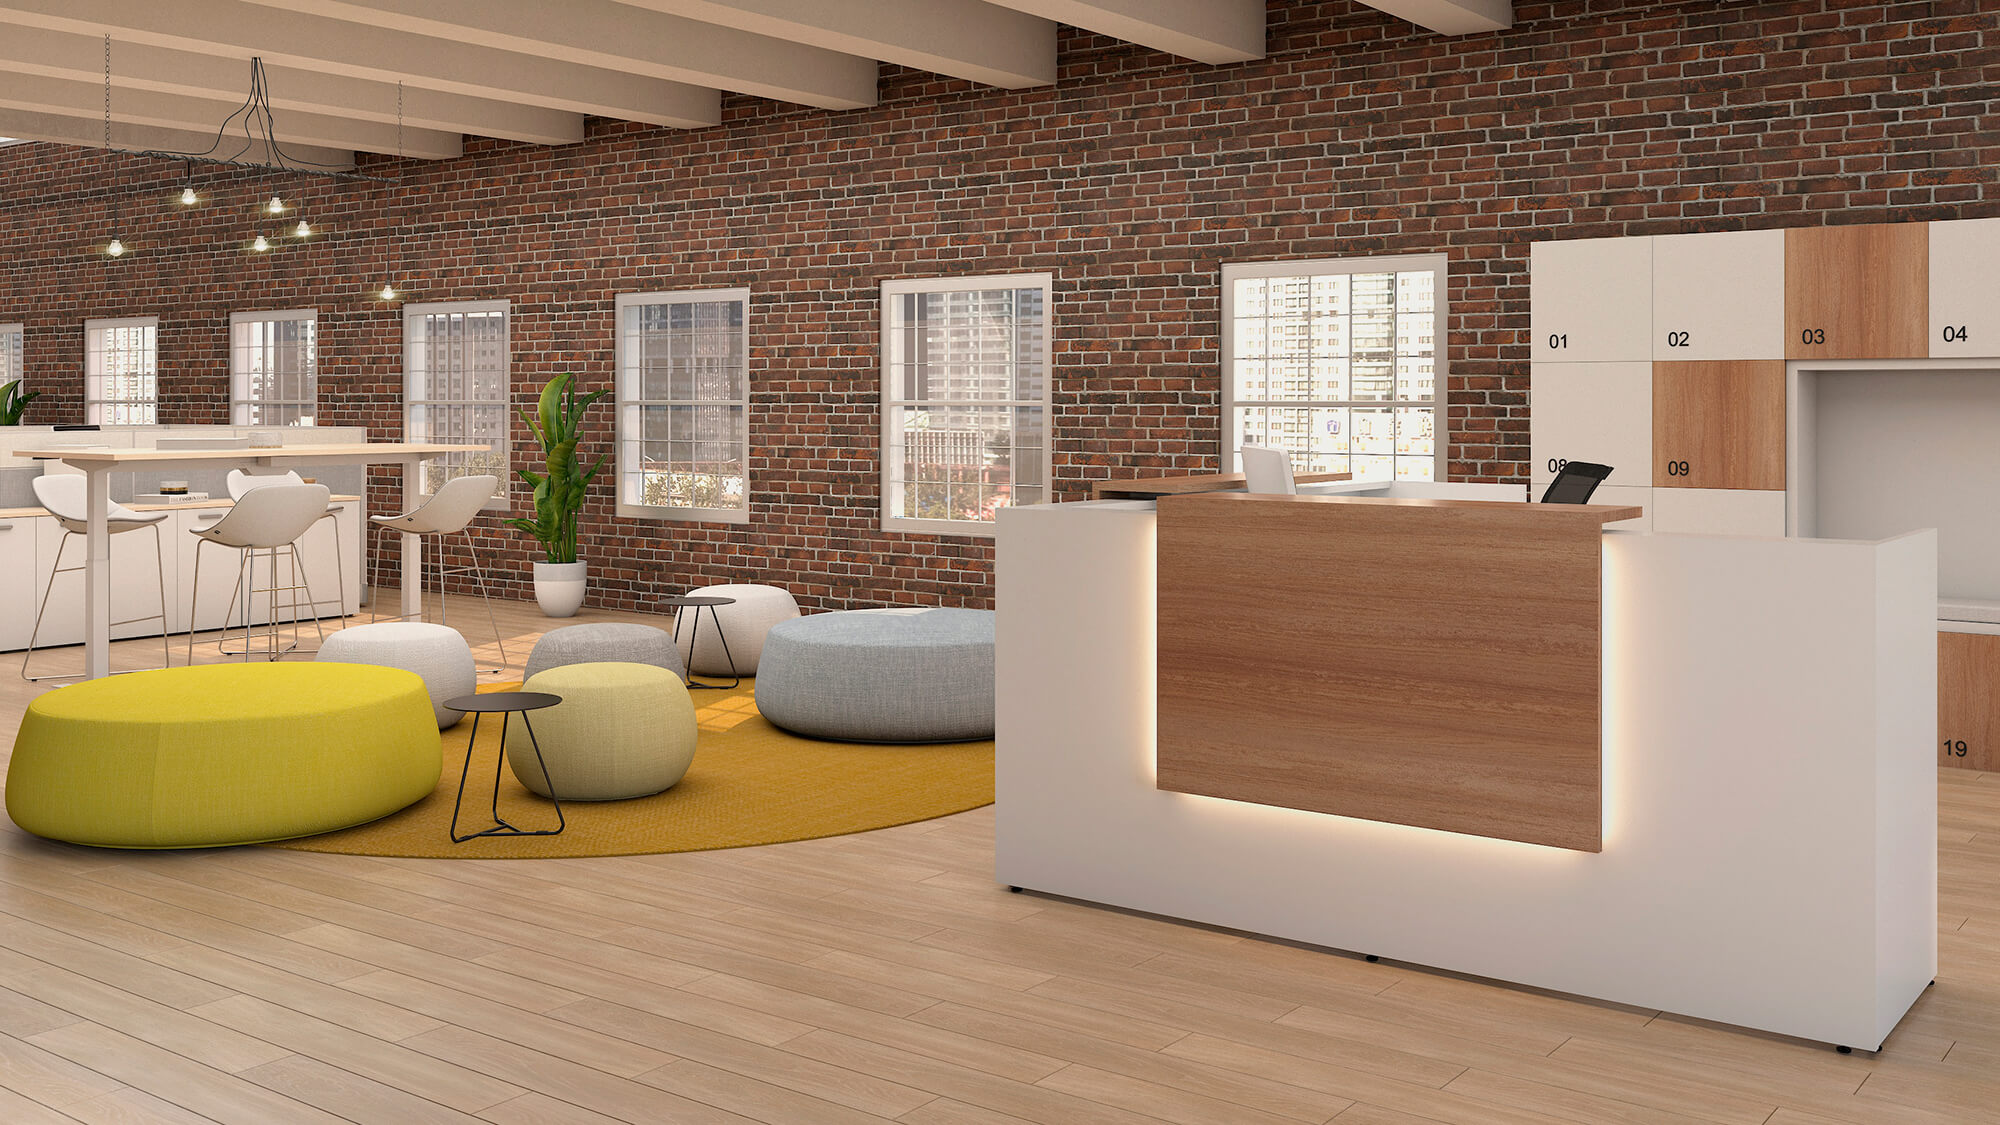 Un espacio con escritorios regulables en altura y mesas modernas de oficina en chile.